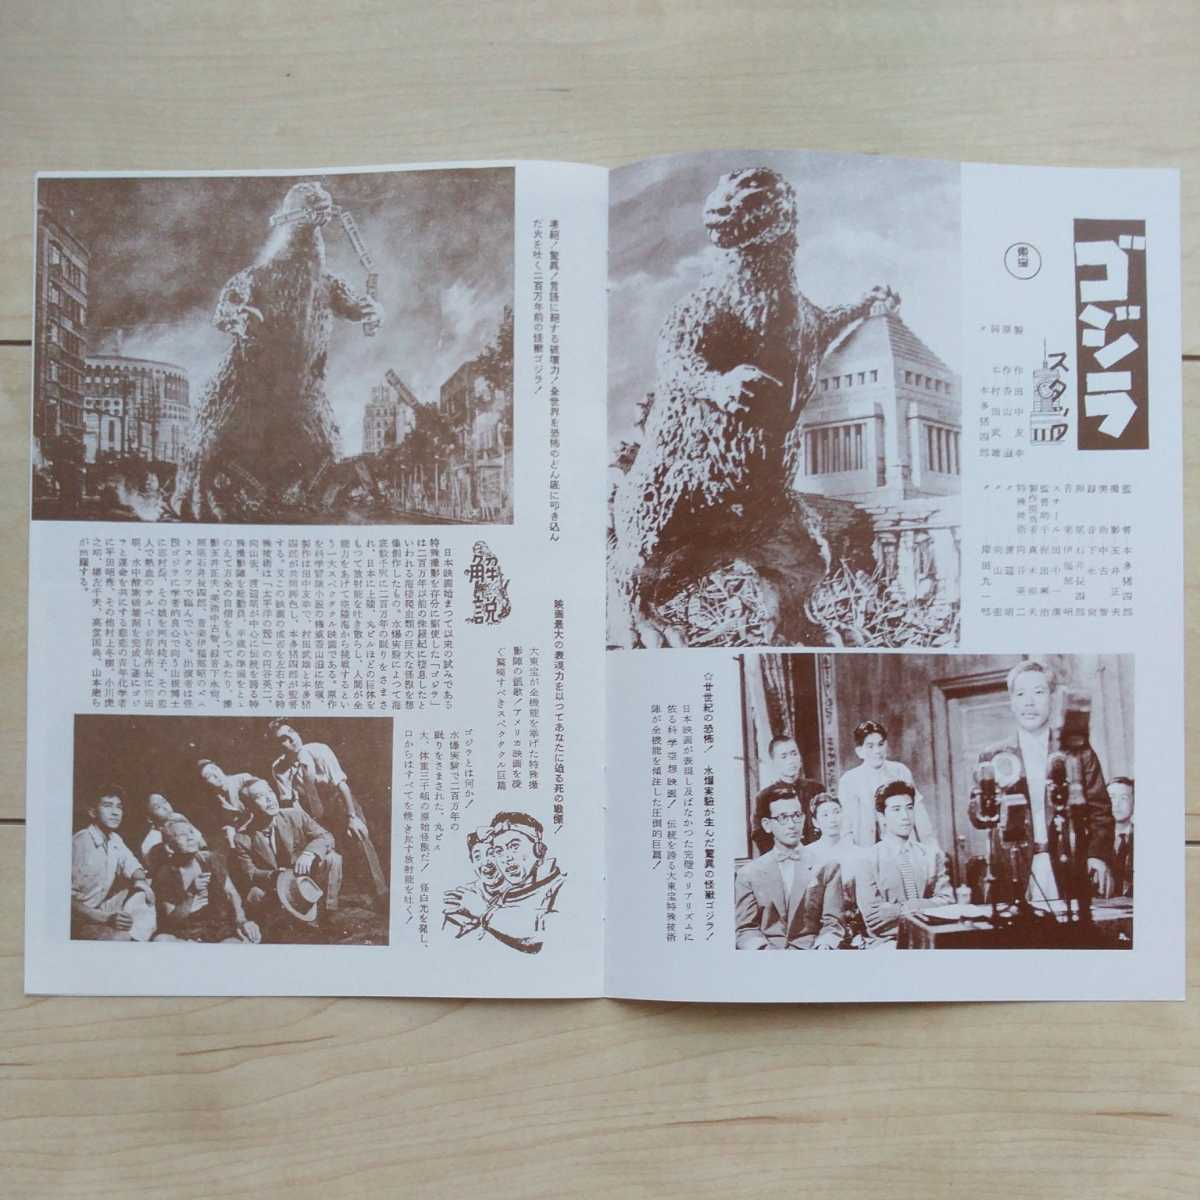 # переиздание [ Godzilla ] фильм Pamphlet1 шт.....*. рисовое поле Akira * Kawauchi Momoko * flat рисовое поле ../ др. выступление.1954 год восток . акционерное общество произведение.Kodansha2016 год.